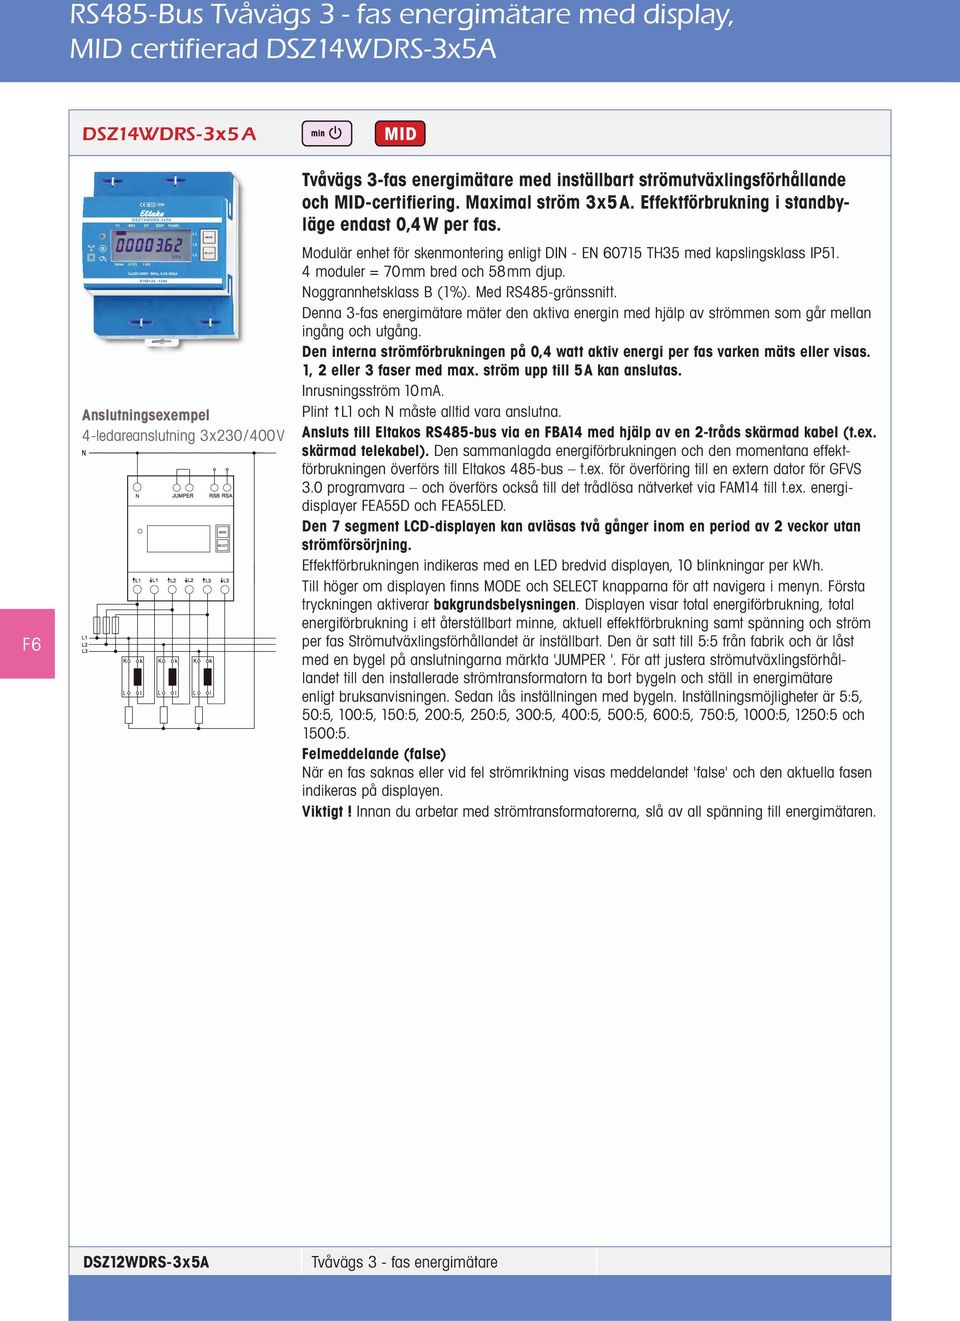 Modulär enhet för skenmontering enligt DIN - EN 60715 TH35 med kapslingsklass IP51. 4 moduler = 70mm bred och 58mm djup. Noggrannhetsklass B (1%). Med RS485-gränssnitt.